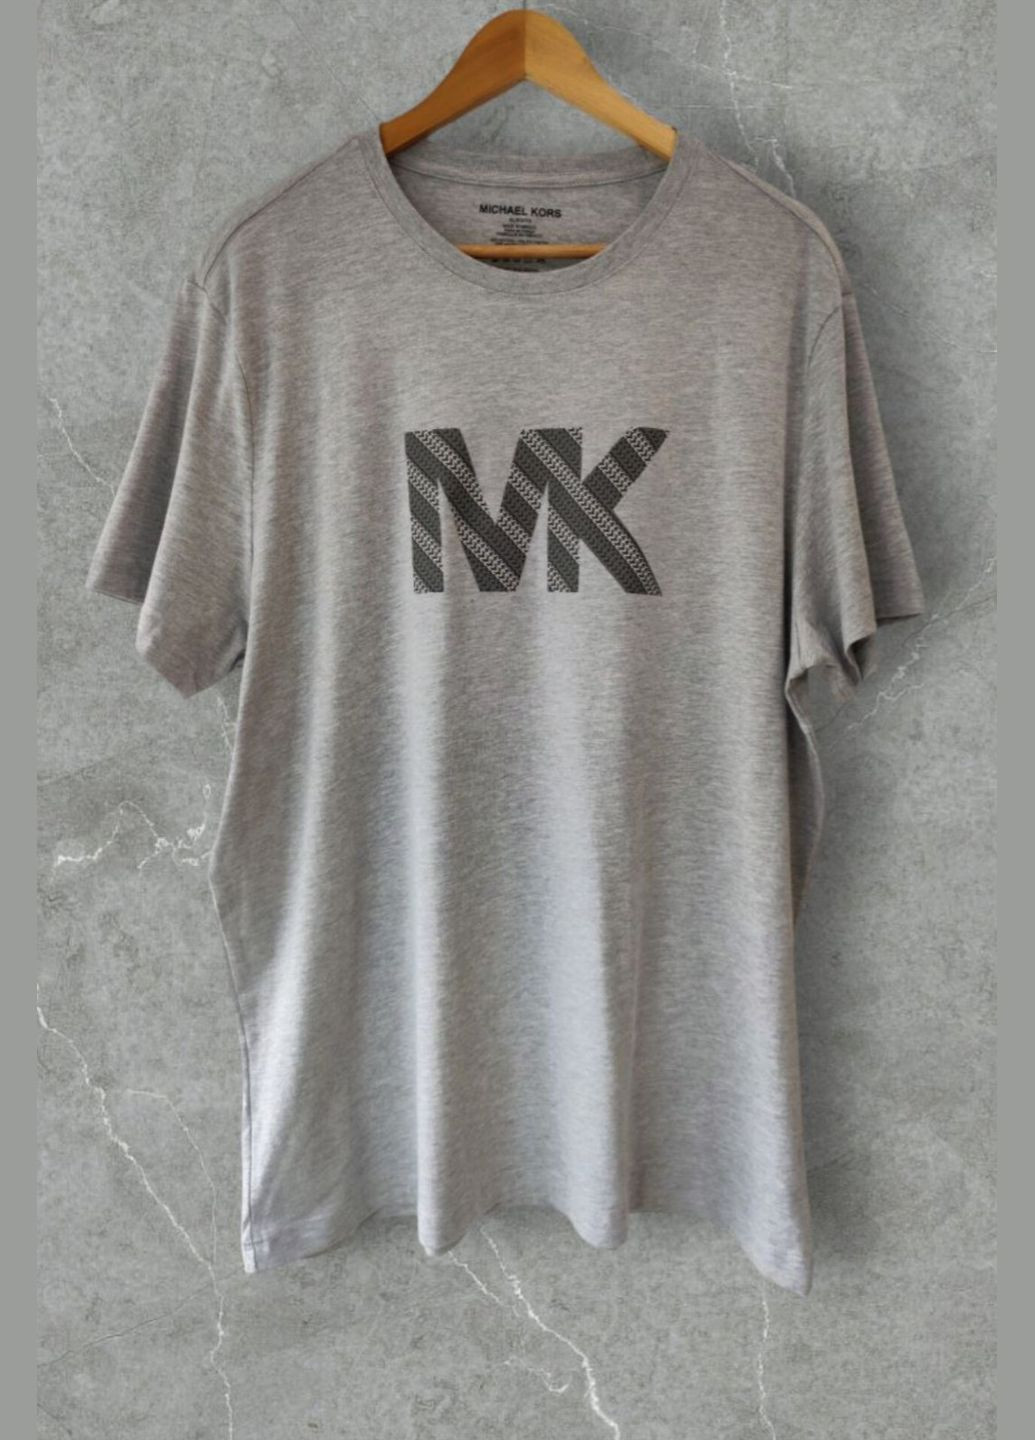 Серая футболка мужская серая с коротким рукавом Michael Kors